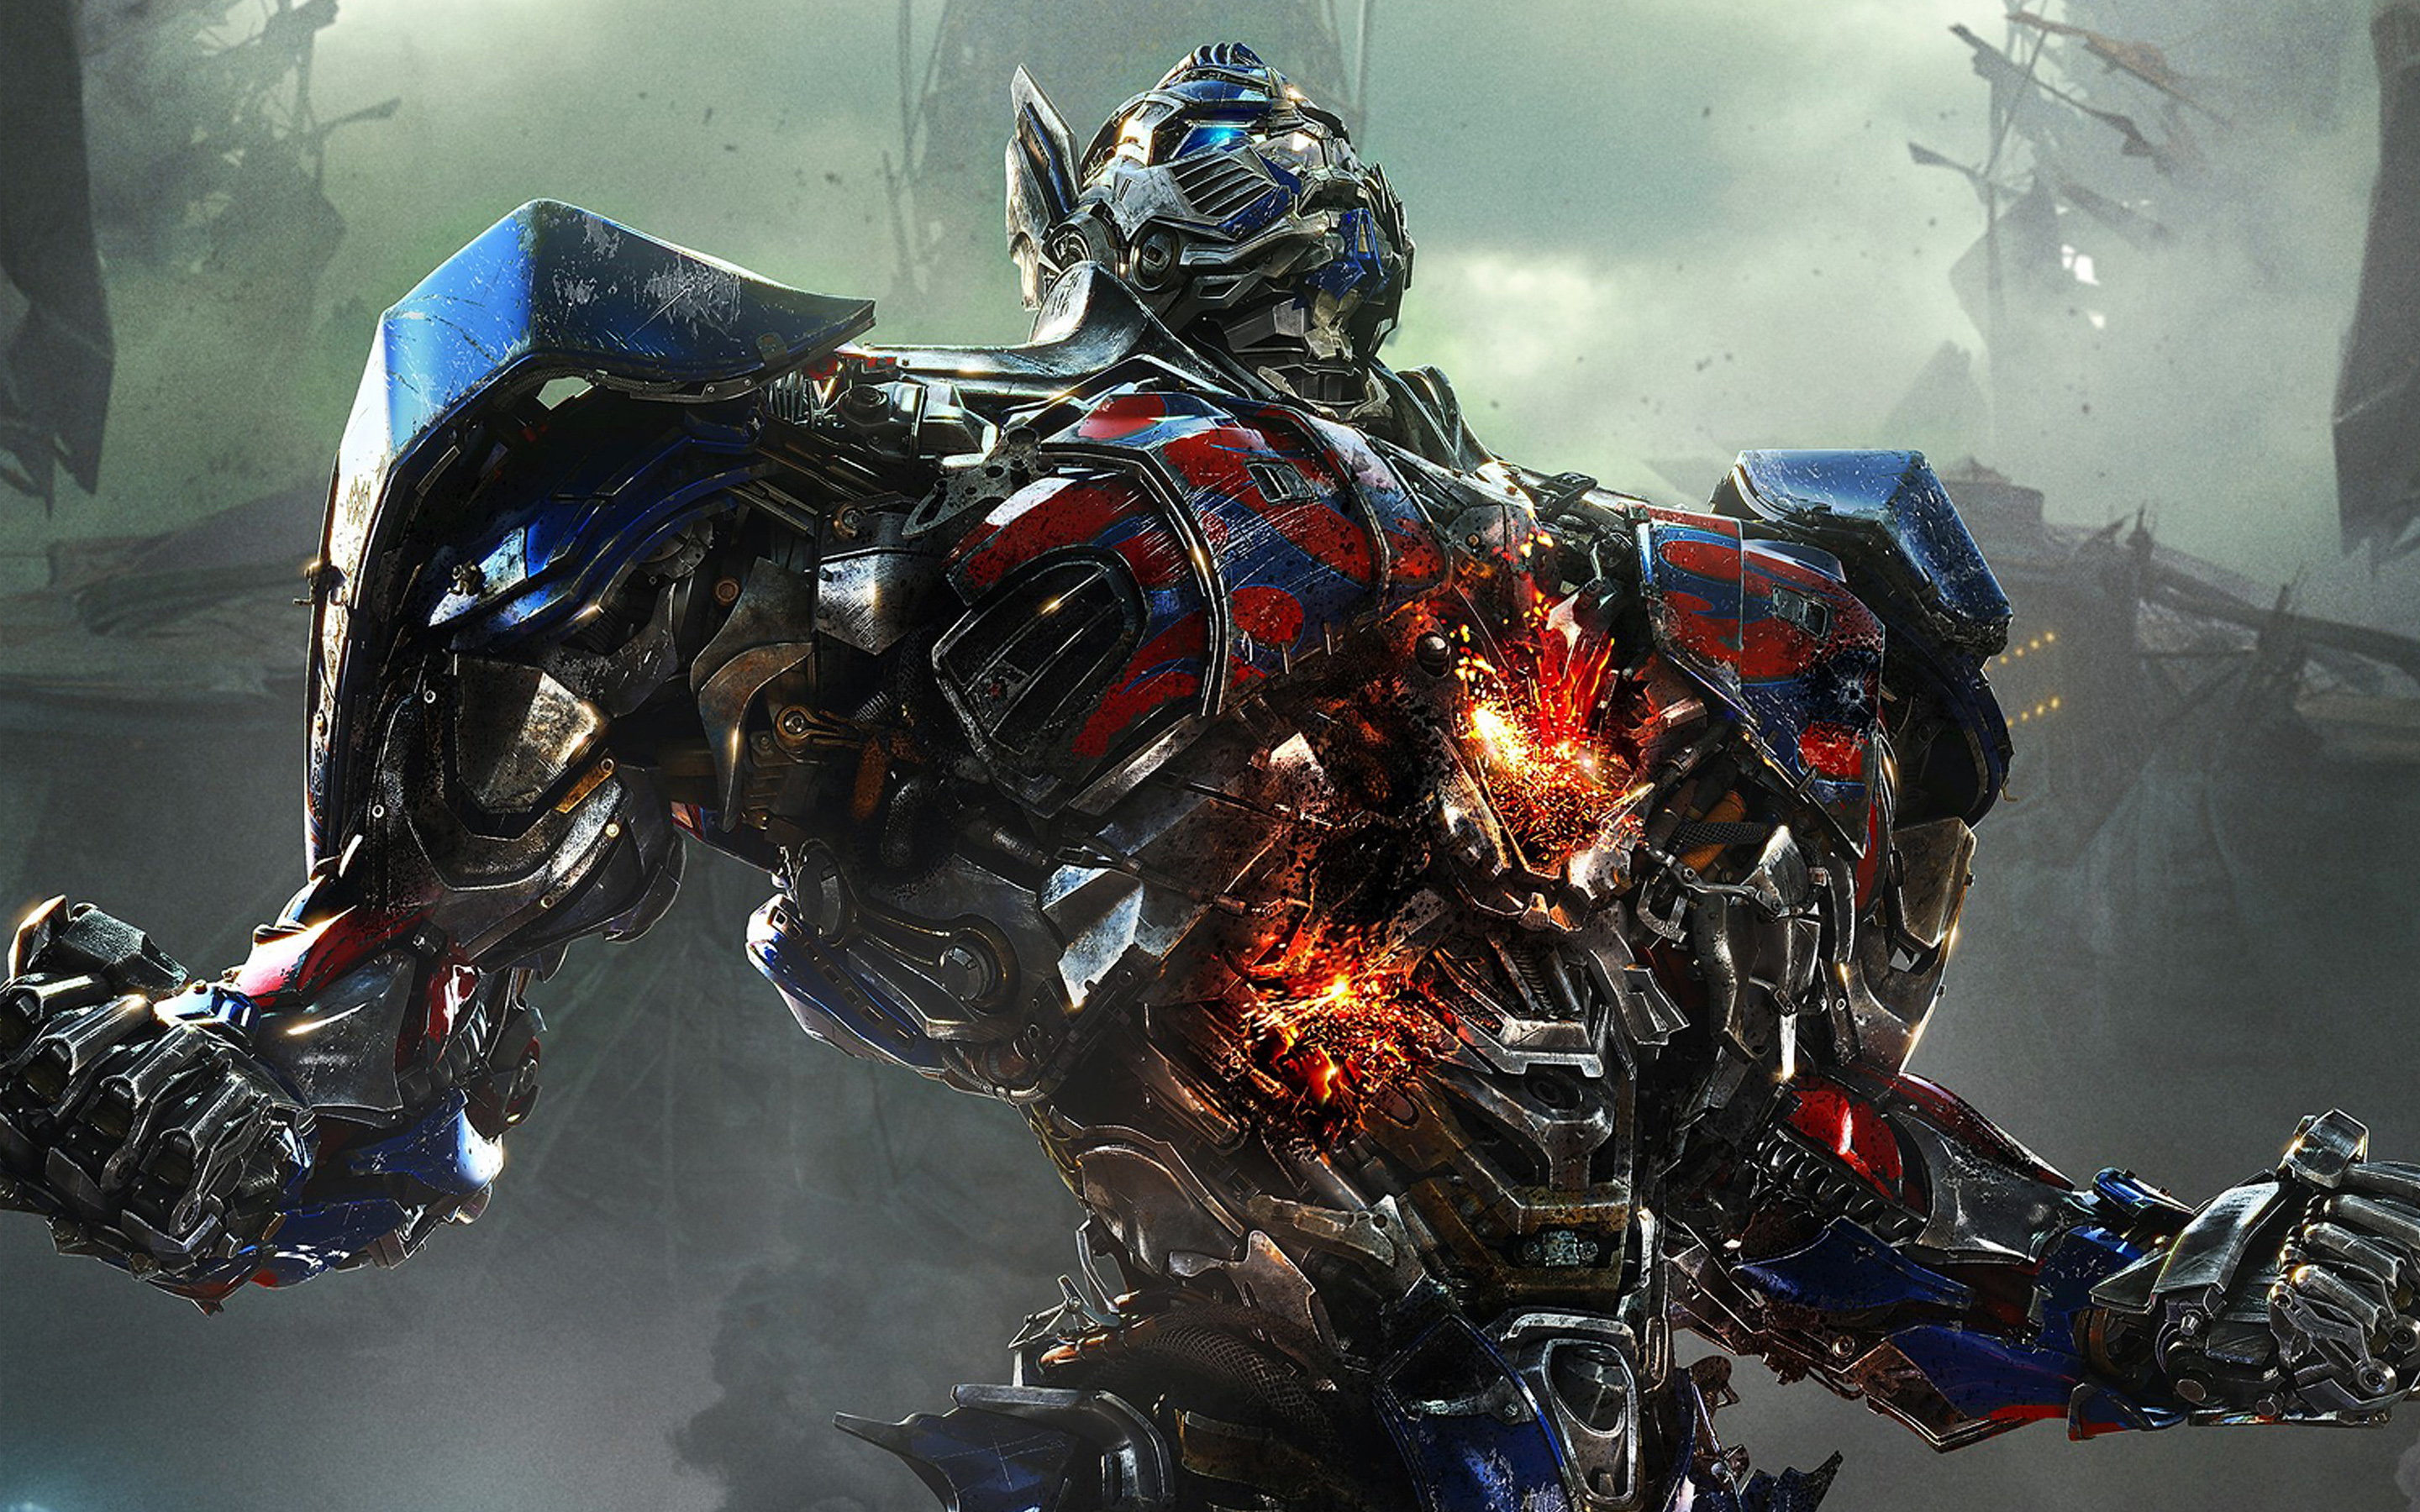 Transformers | Novo filme não será um reboot, mas uma evolução da franquia